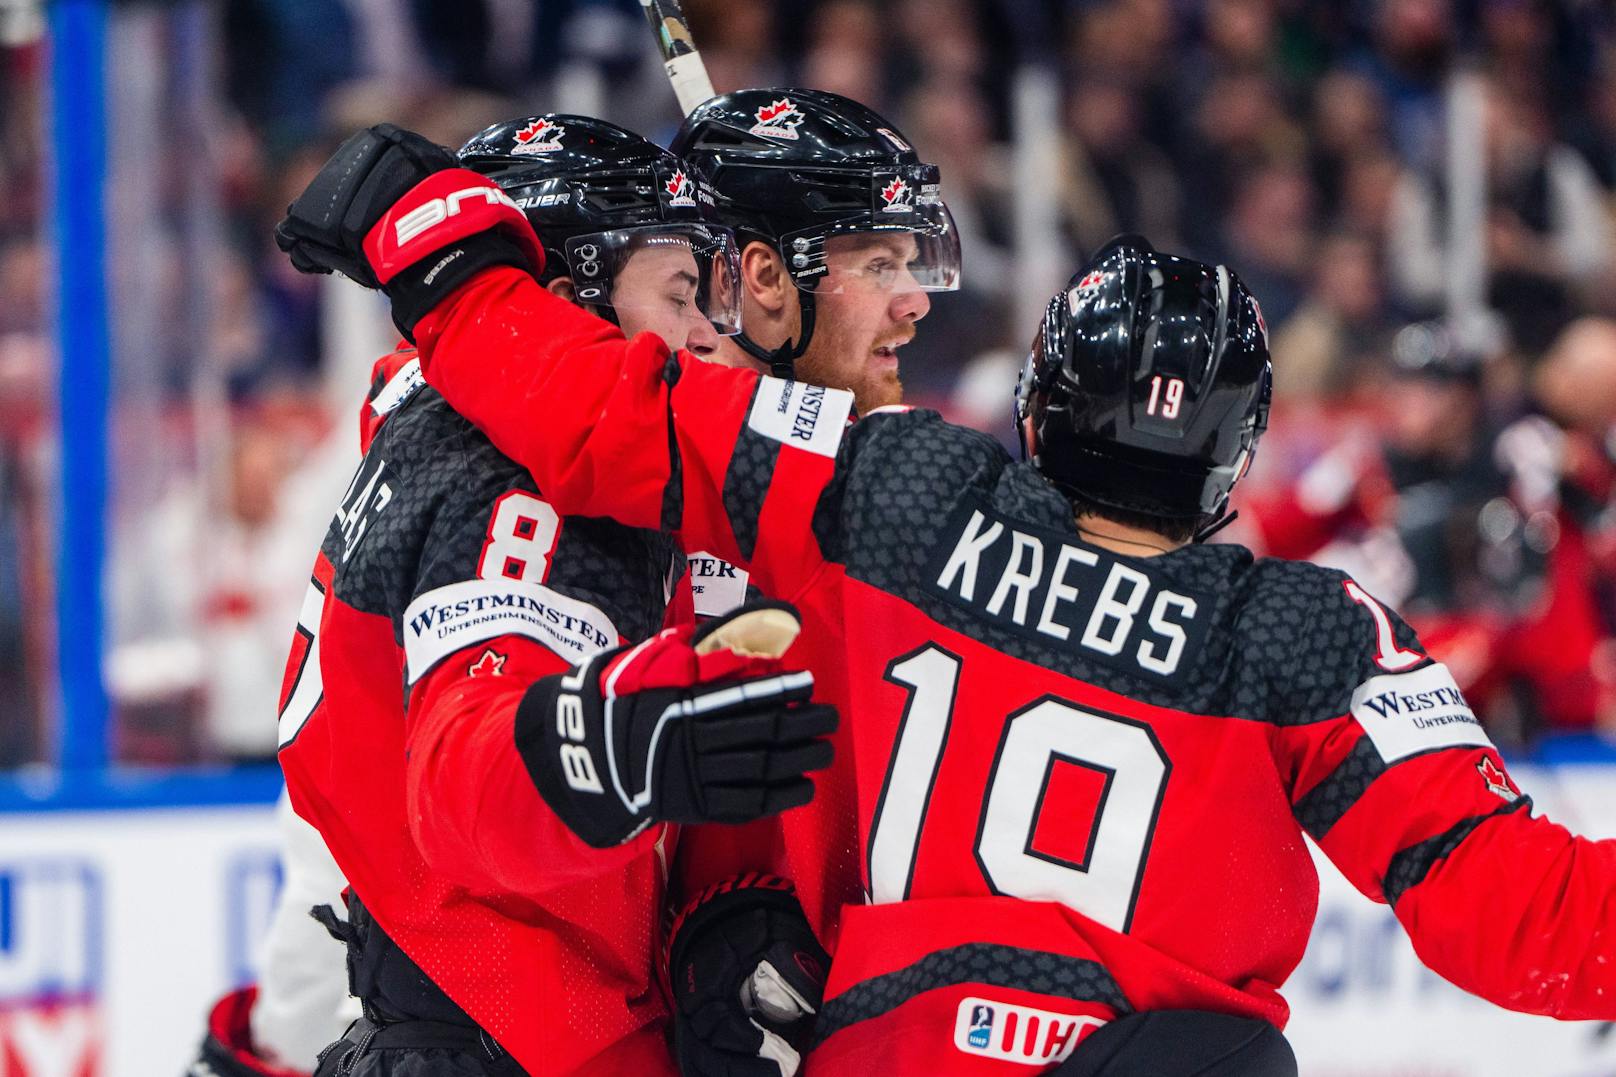 Kanada krönte sich im Finale der Eishockey-WM gegen Deutschland zum Weltmeister.